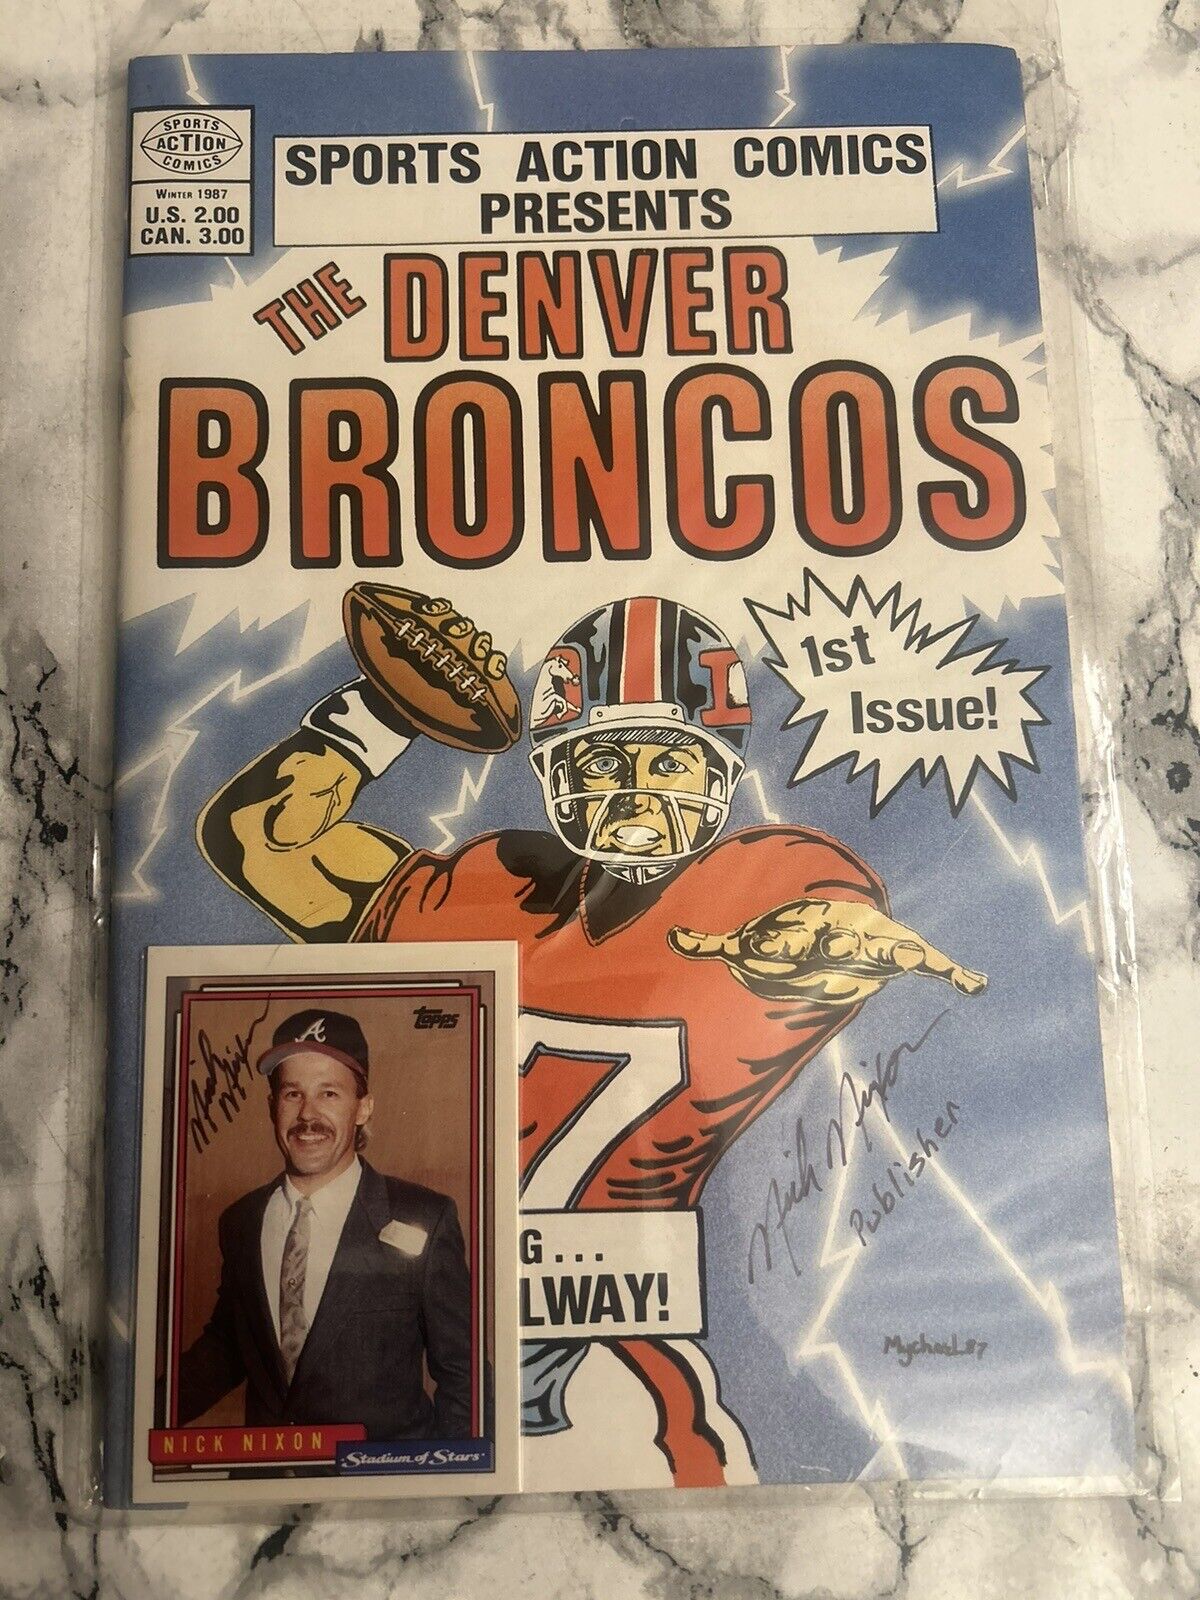 Denver Broncos 1st Edition Sports Action Comics Nick Nixon Autograph + Card 1987